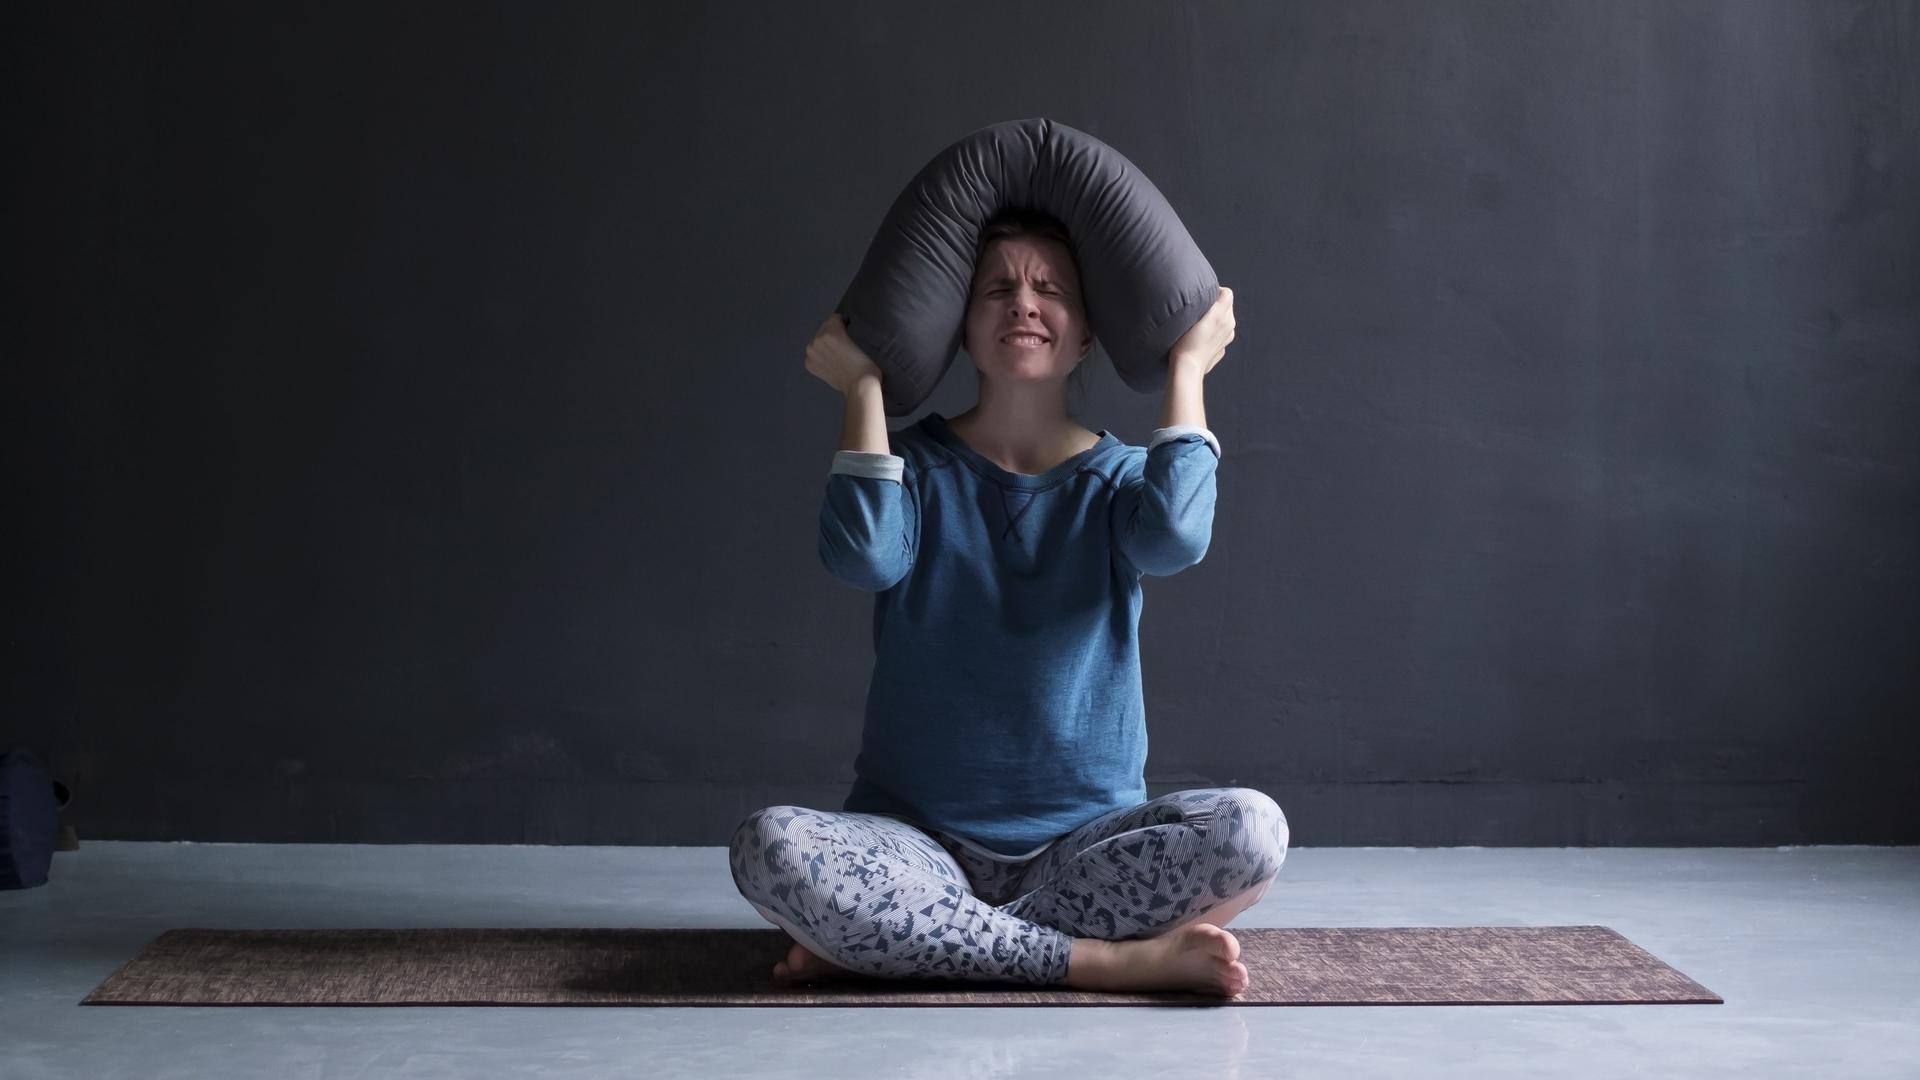 Eine Frau sitzt auf einer Yogamatte und drückt wütend ein Kissen auf ihren Kopf.